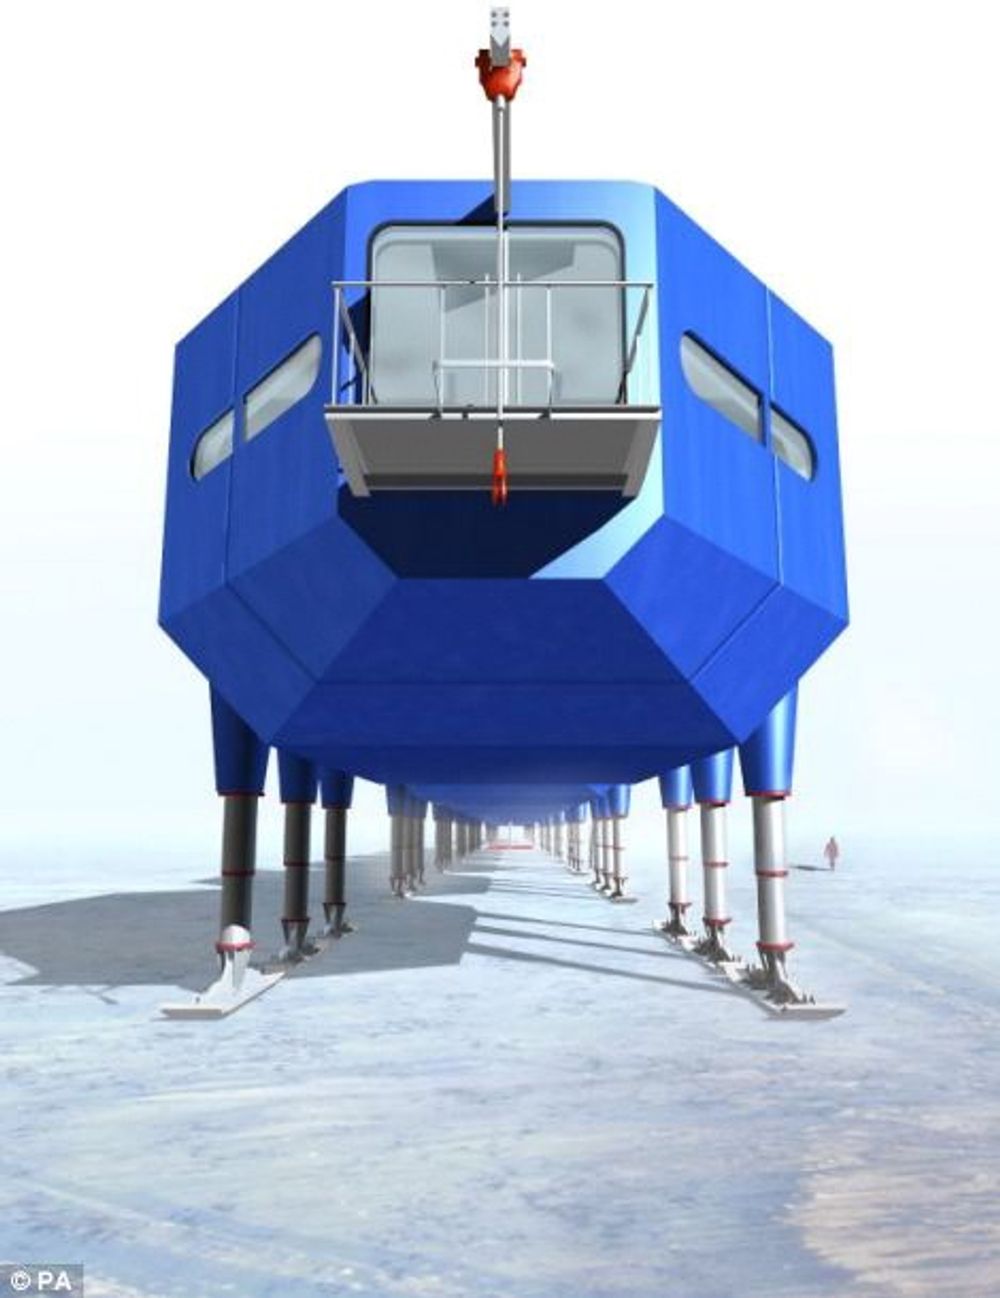 OVERGANGER: Halley VI består av sju moduler på fire hydrauliske ben. Modulene føyes sammen av påmonterte overgangsenheter i luften. Foto: British Antarctic Survey